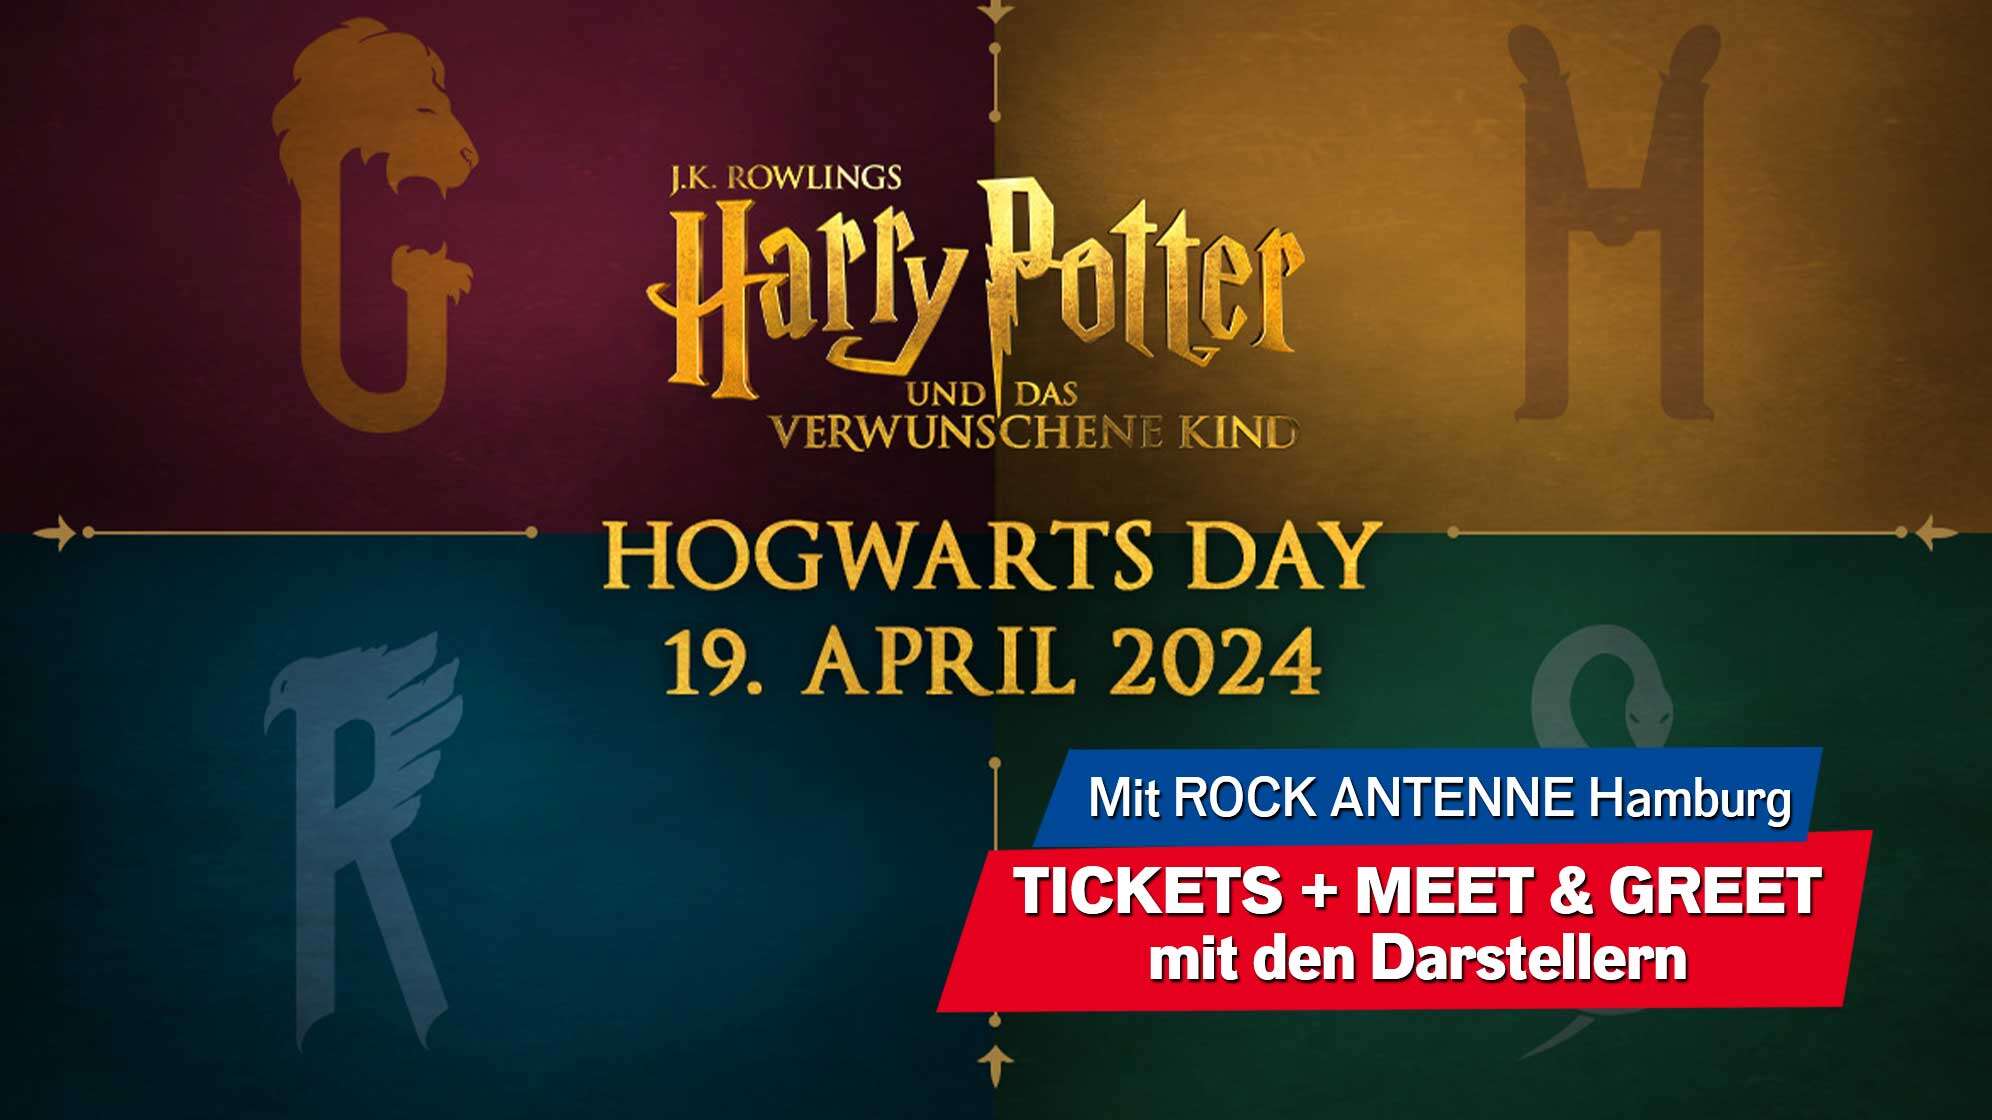 Harry Potter und das verwunschene Kind - Hogwarts Day am 19. April 2024. Tickets + Meet & Greet